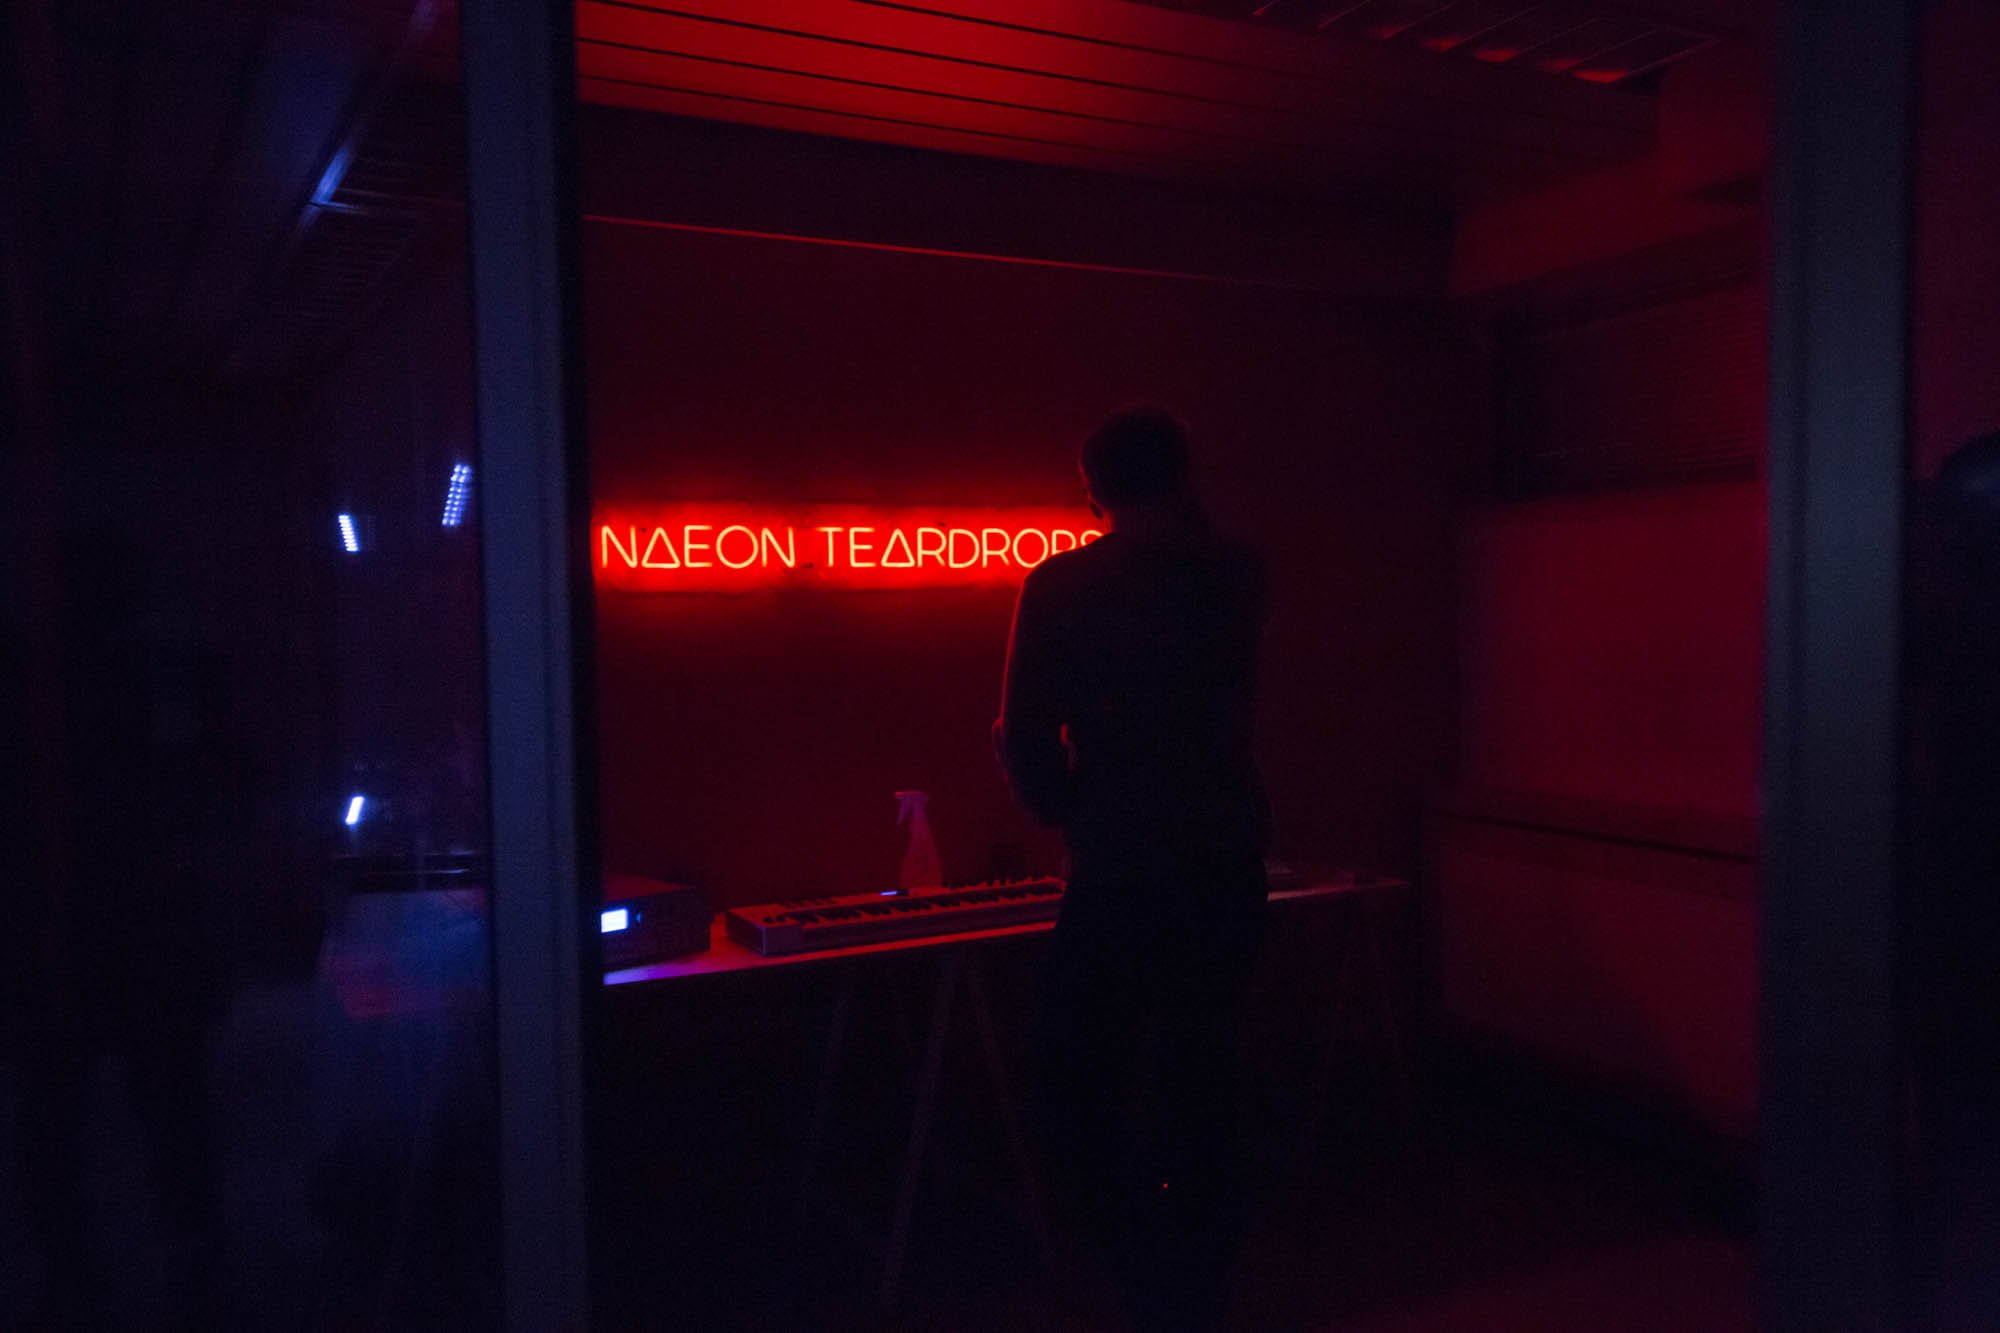  Musikkrommet til Neon Teardrops.  Foto: Alessandro Belleli.  